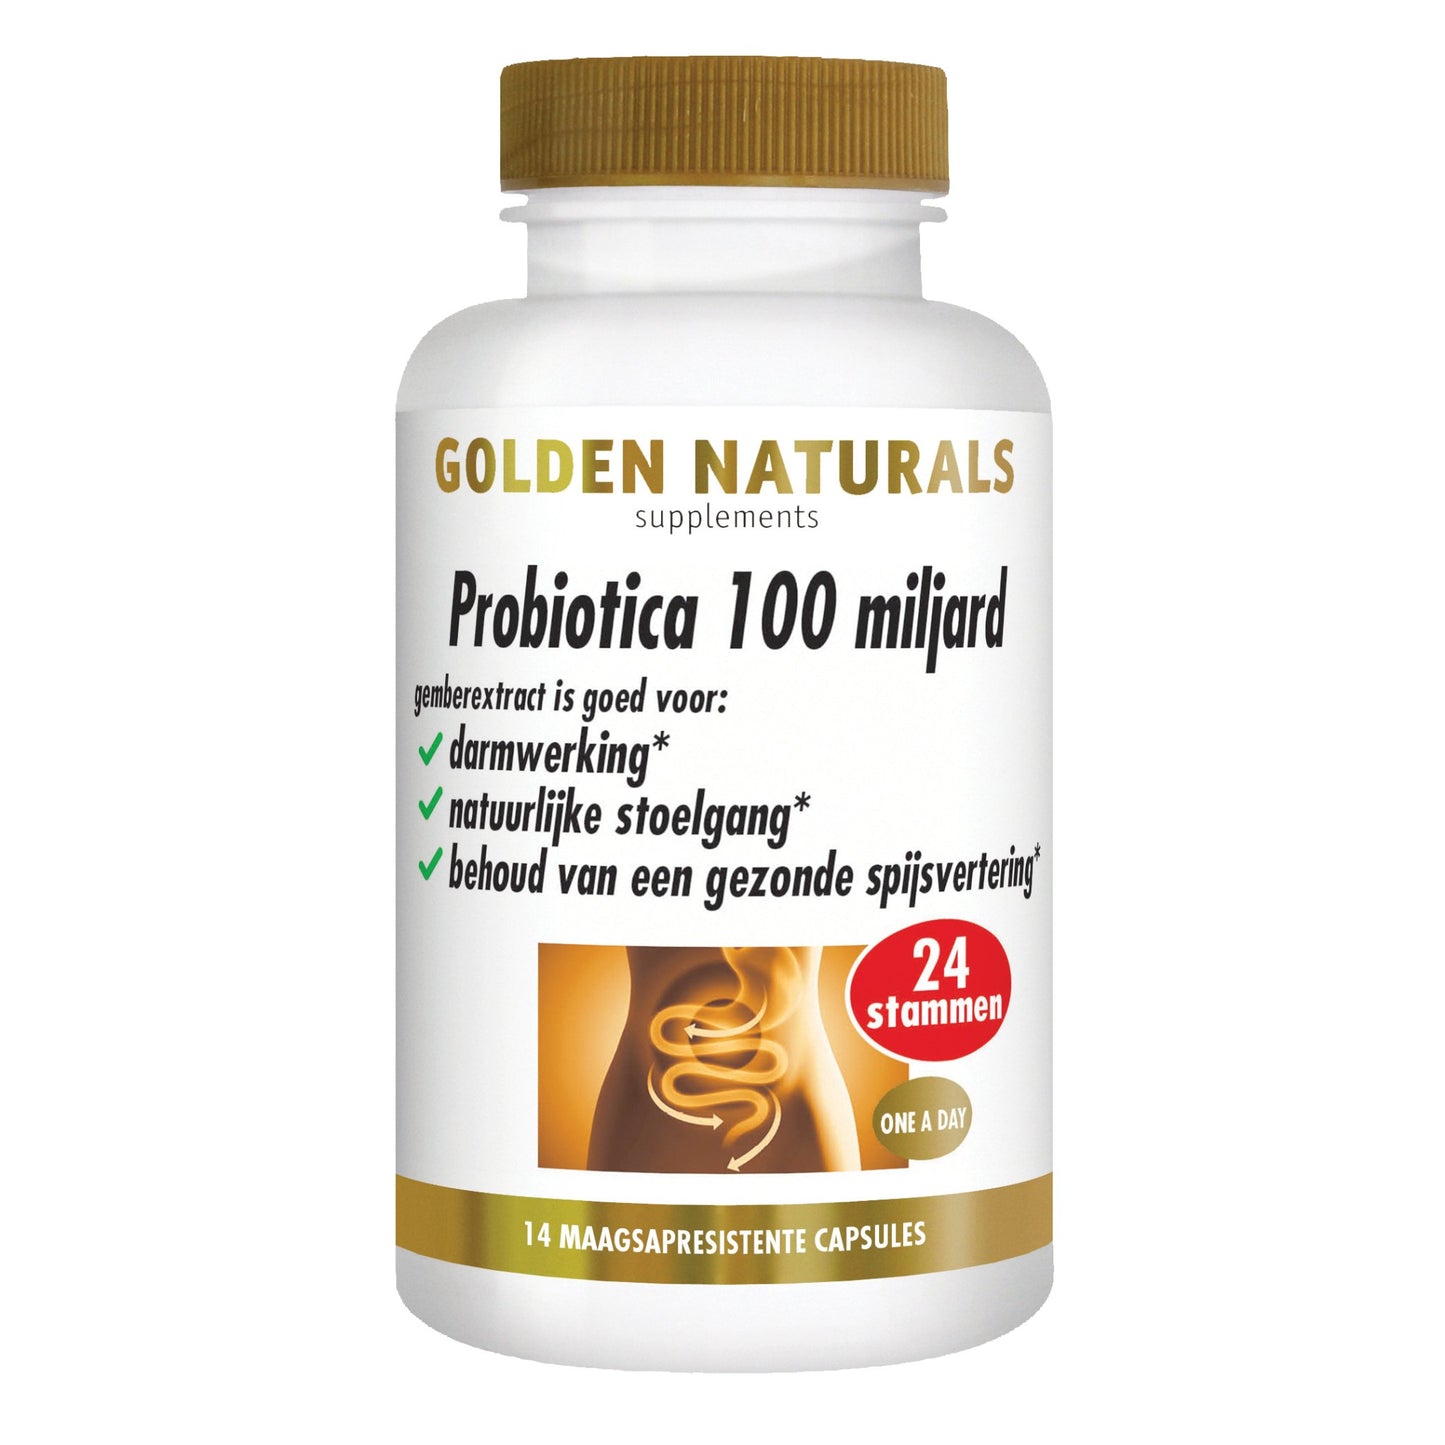 Probiotica 100 miljard - 14 - veganistische maagsapresistente capsules Supplement Golden Naturals   